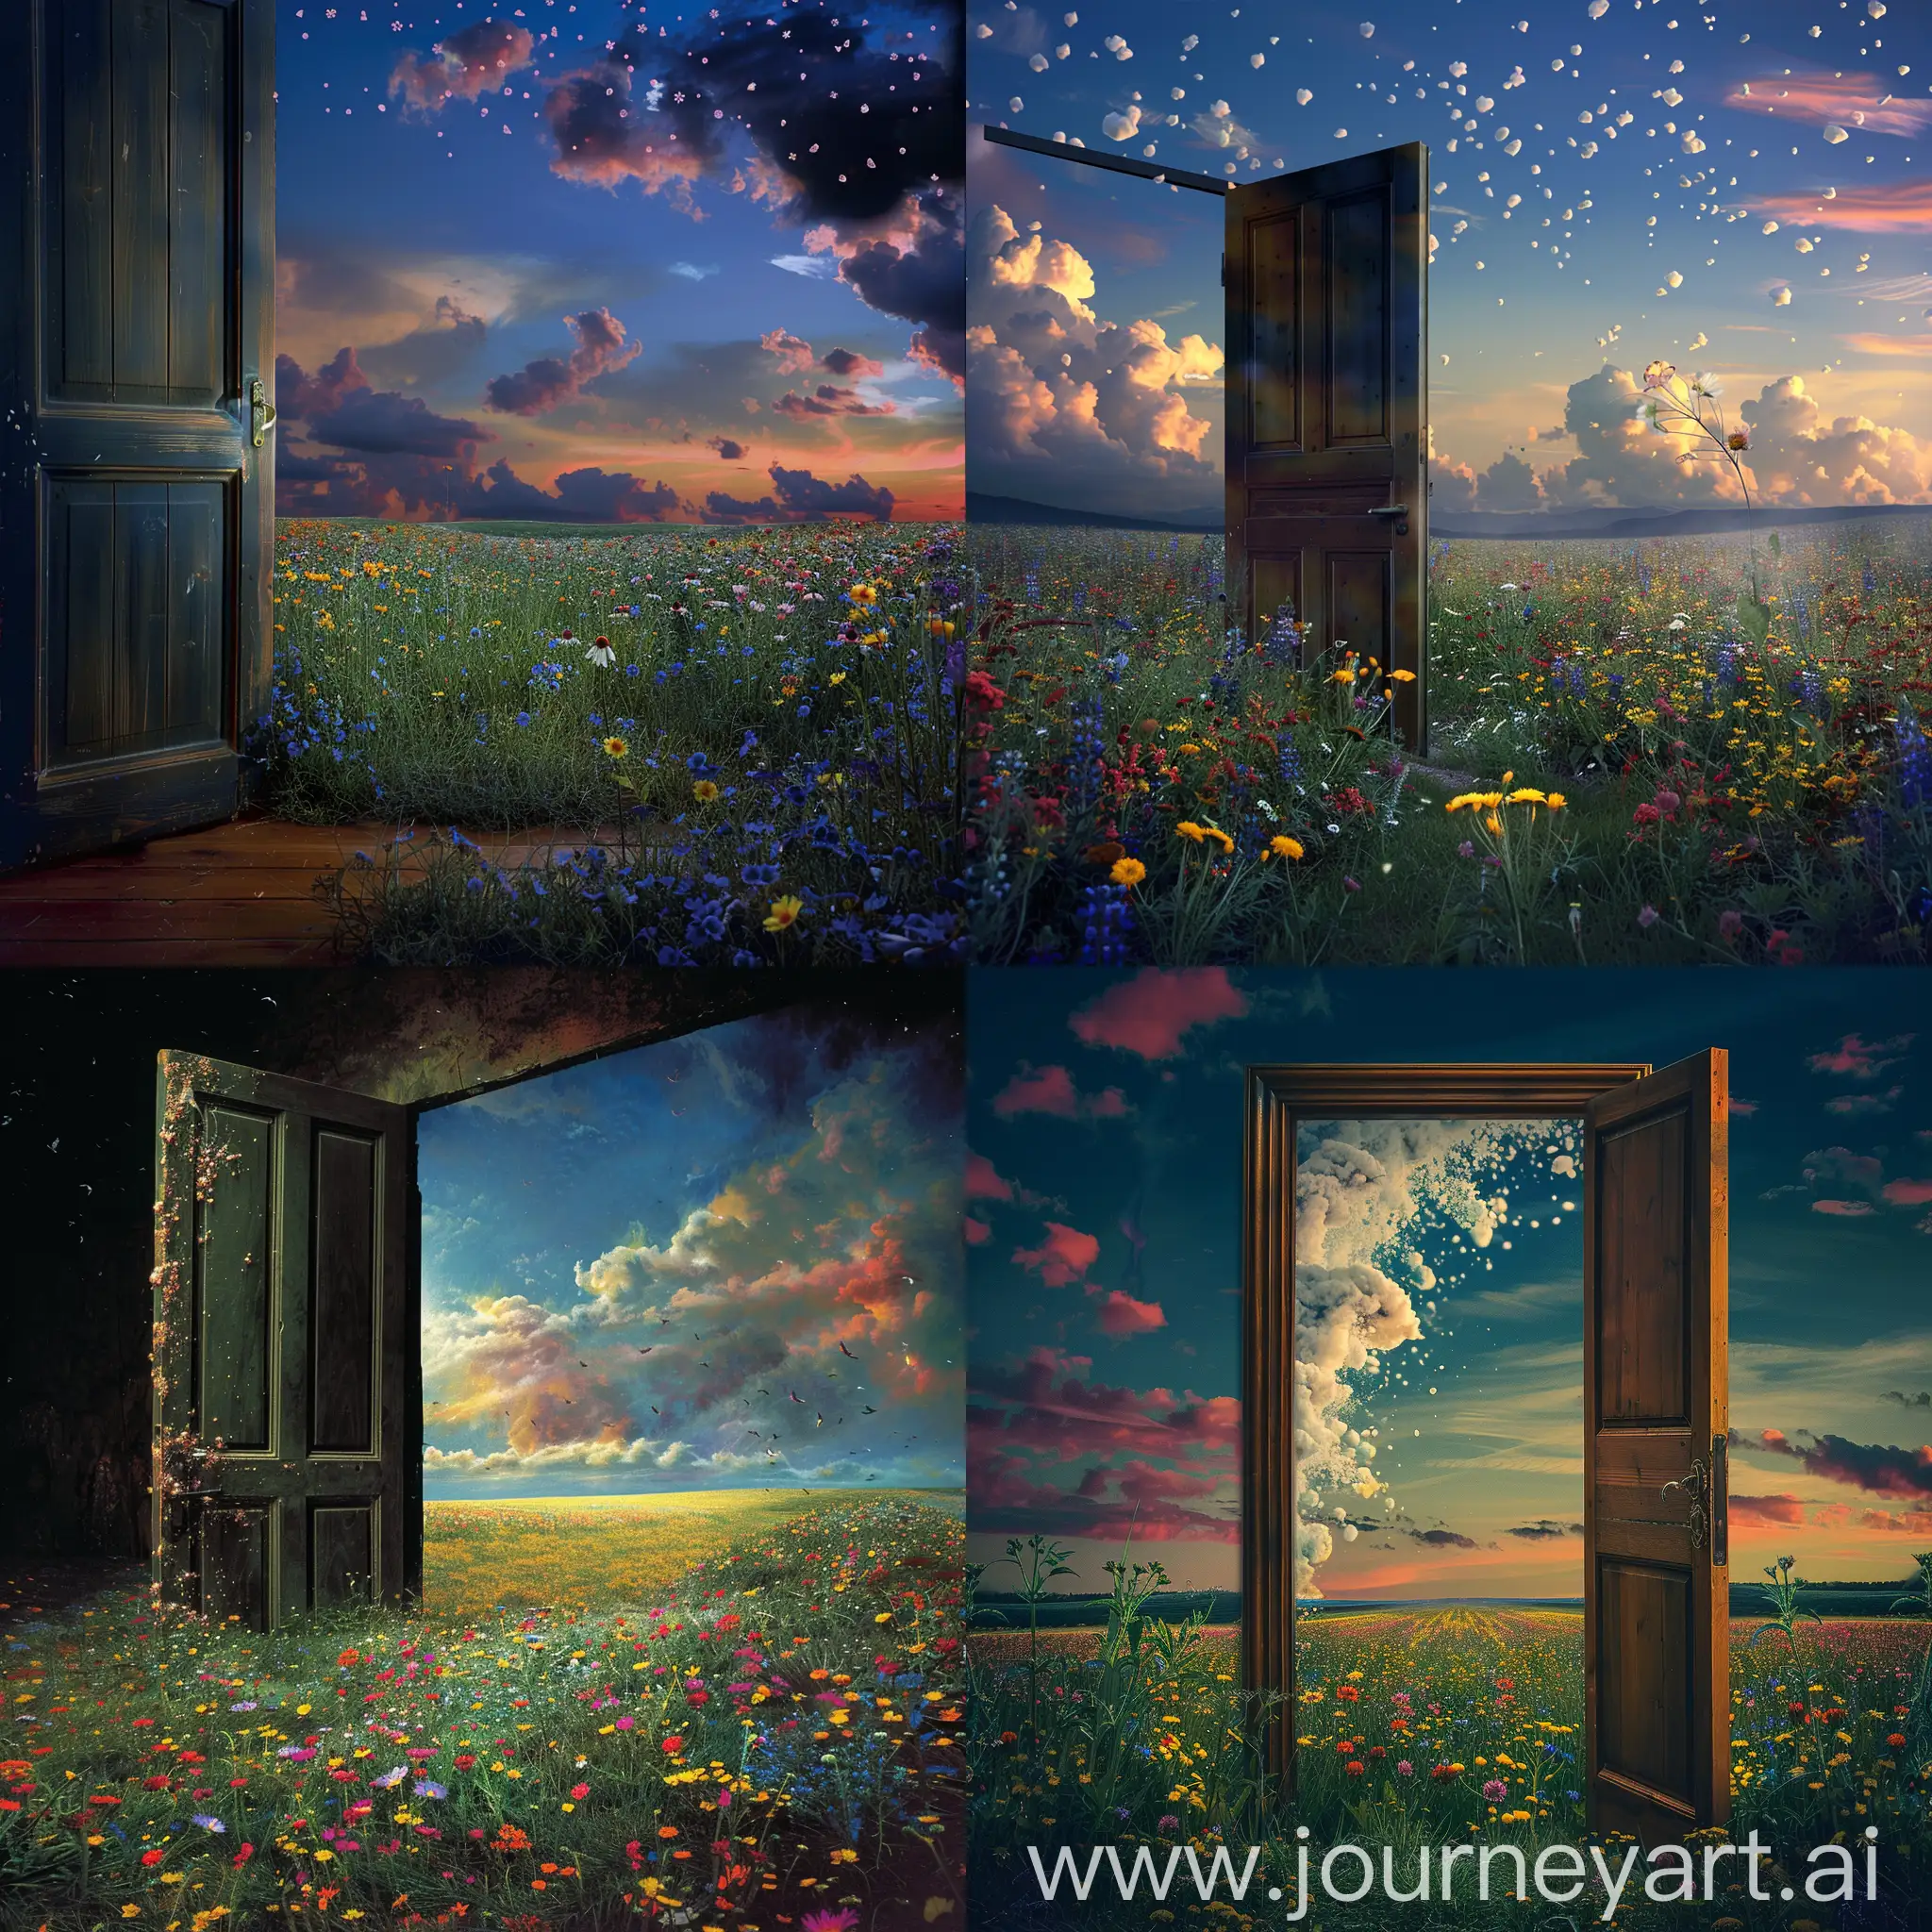 封面上呈现一张半开的门，背景是广袤的野花田野和棉花糖般的色调的天空，刷掉偏暗